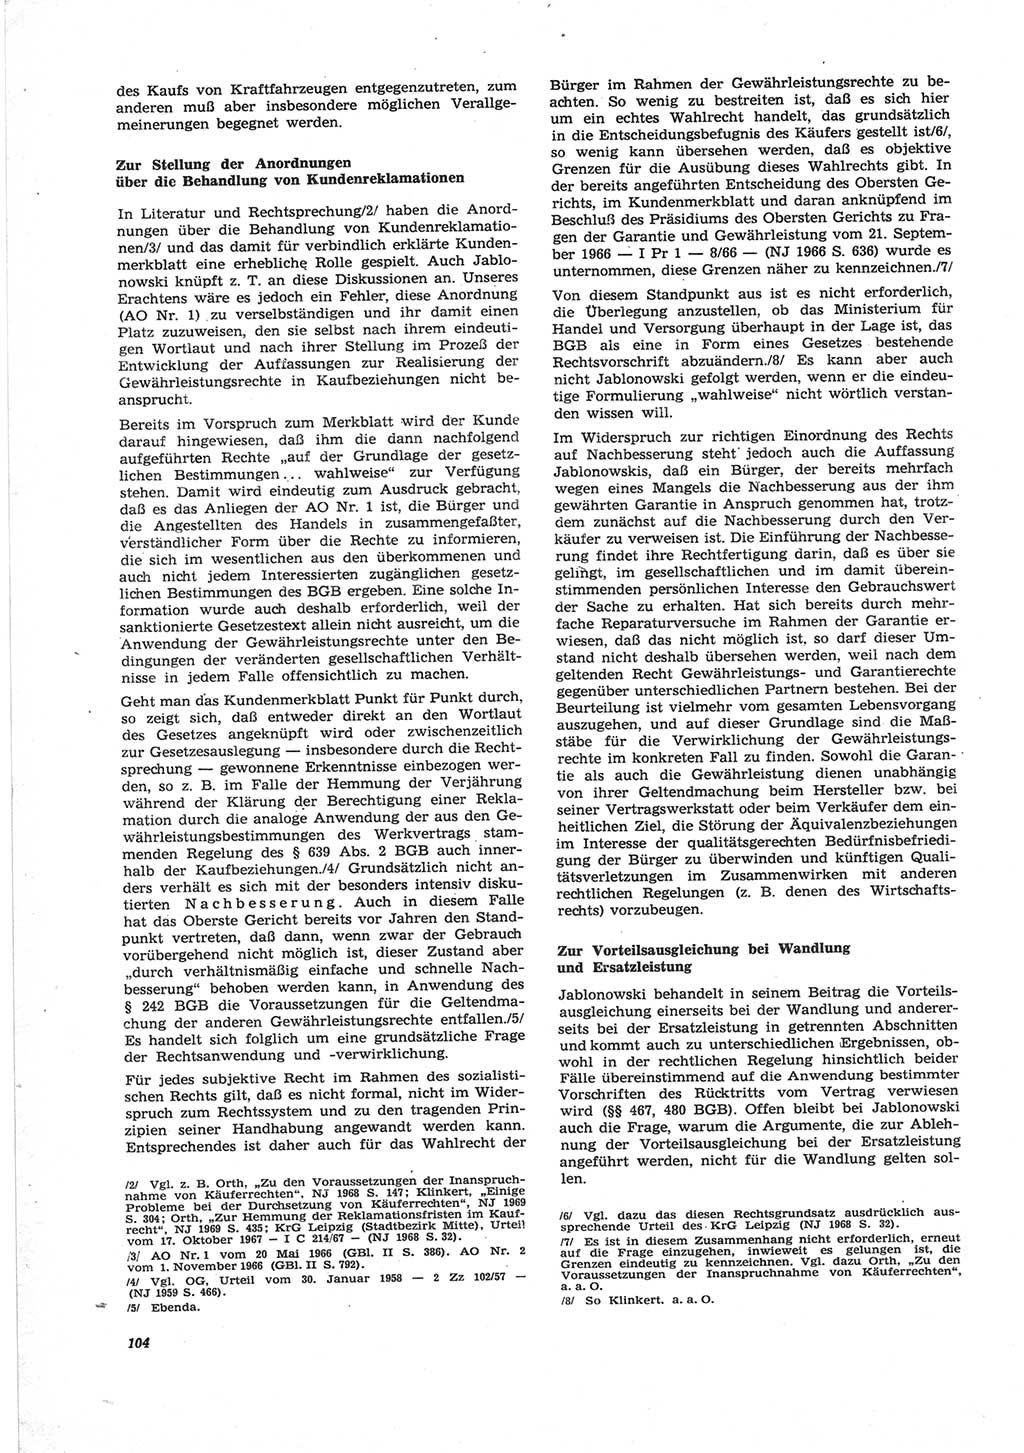 Neue Justiz (NJ), Zeitschrift für Recht und Rechtswissenschaft [Deutsche Demokratische Republik (DDR)], 25. Jahrgang 1971, Seite 104 (NJ DDR 1971, S. 104)